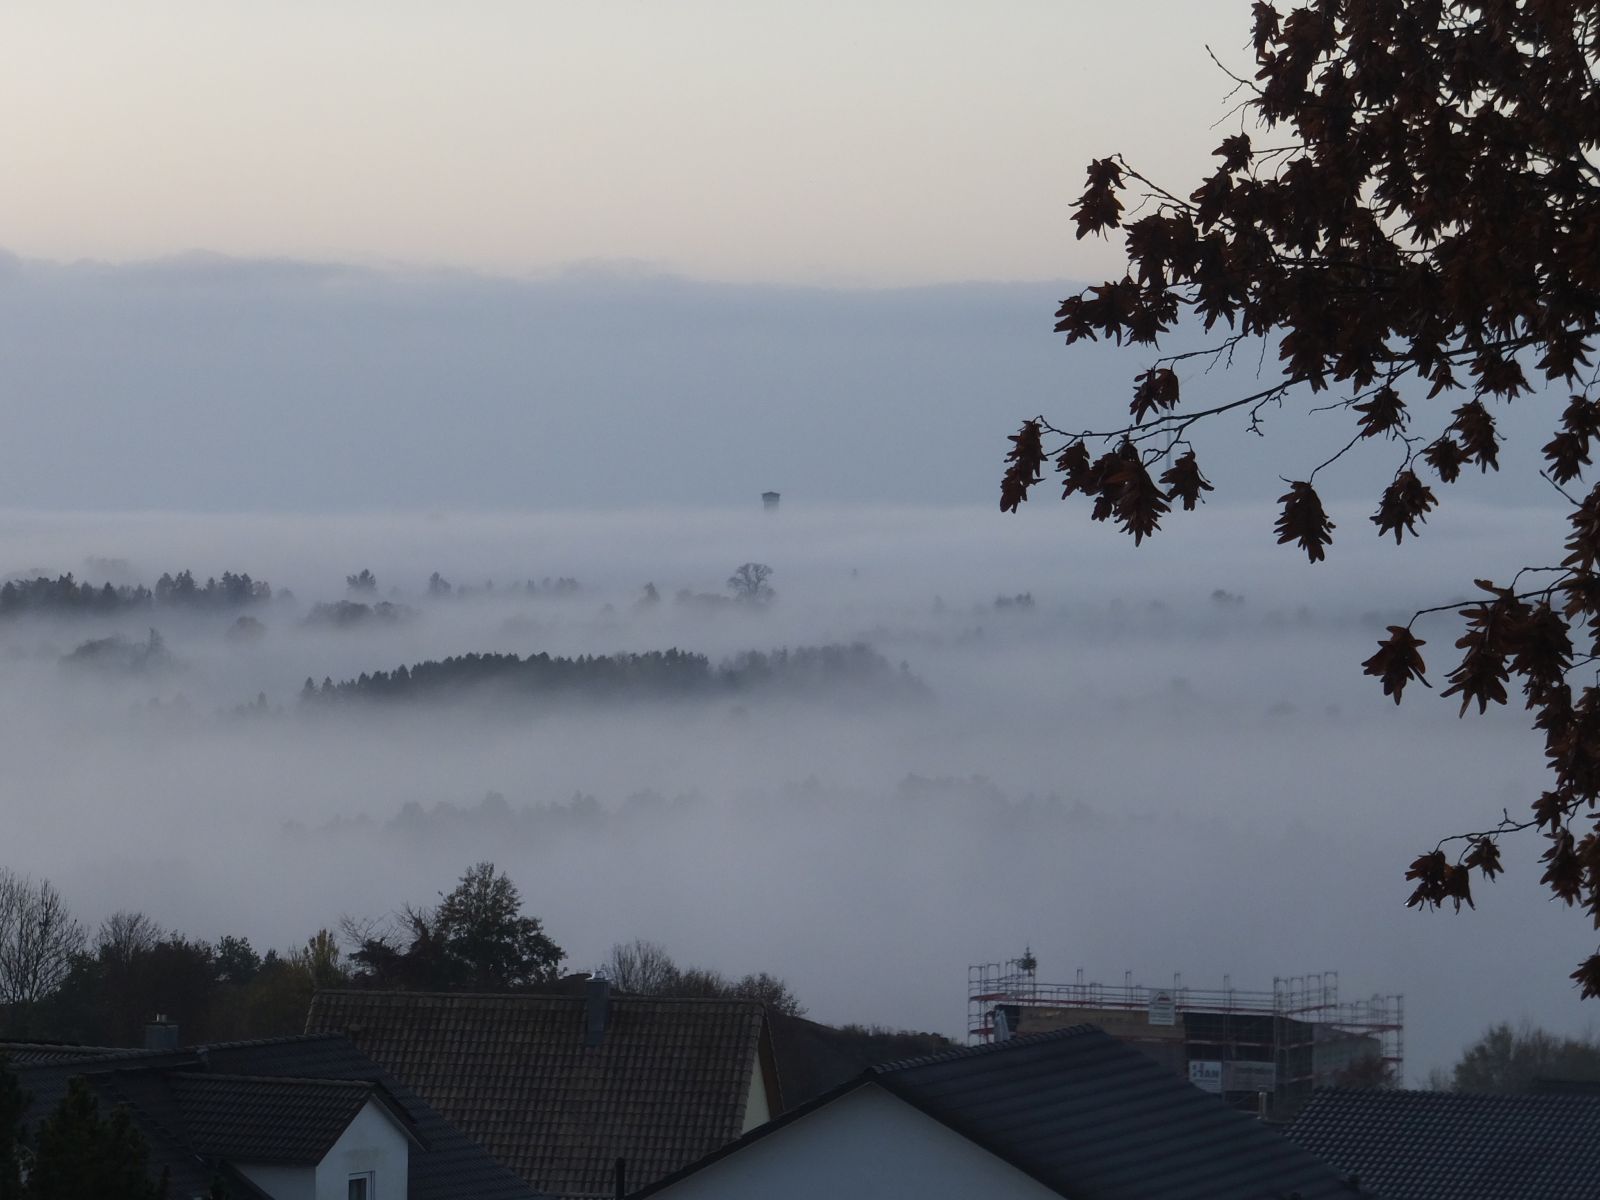  Nebel in Schopfloch - Bild wird mit einem Klick vergrößert 